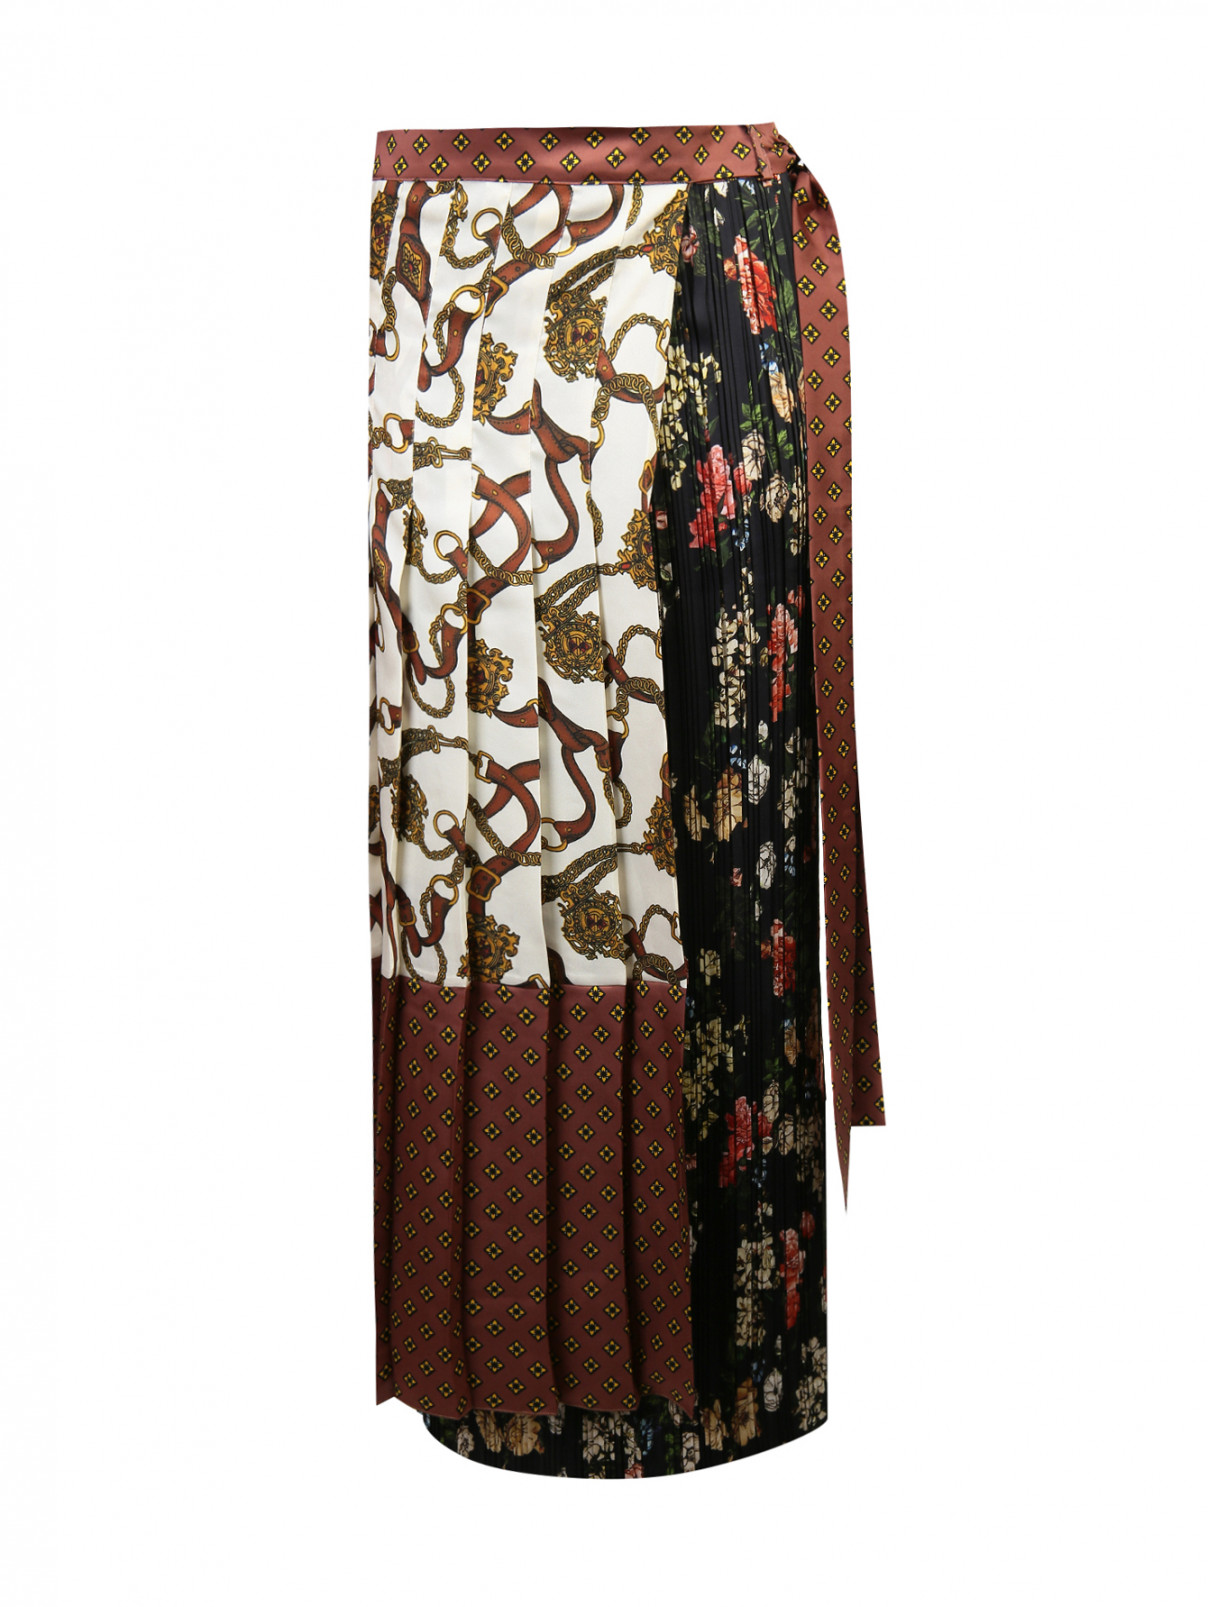 Юбка плиссированная из ткани с принтом Alysi  –  Общий вид  – Цвет:  Коричневый